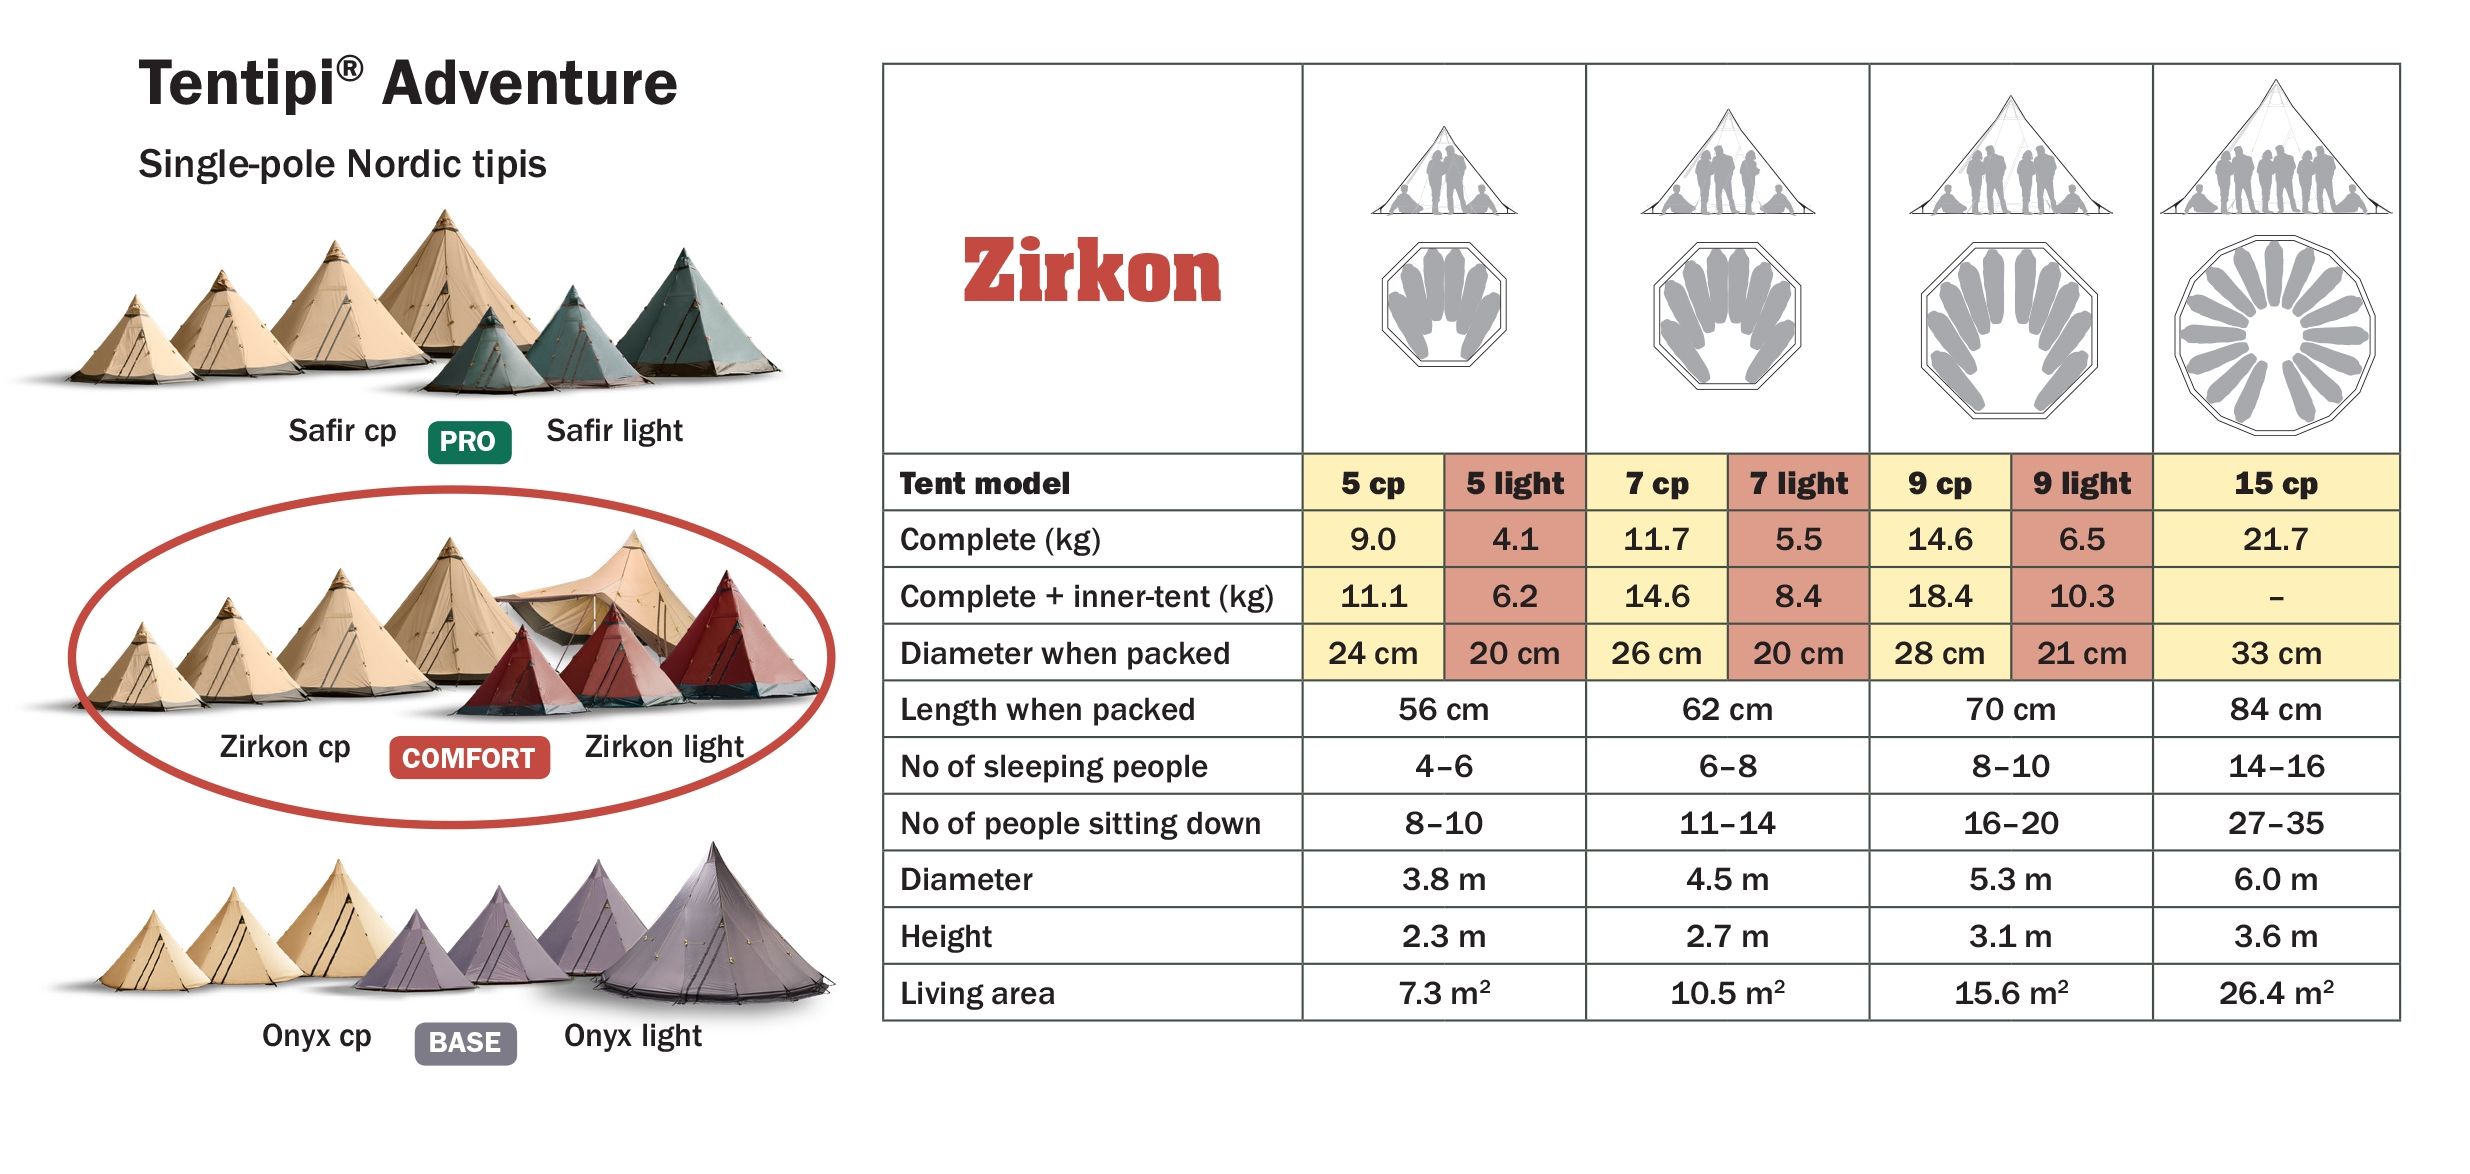 Tentipi Zirkon Size Guide